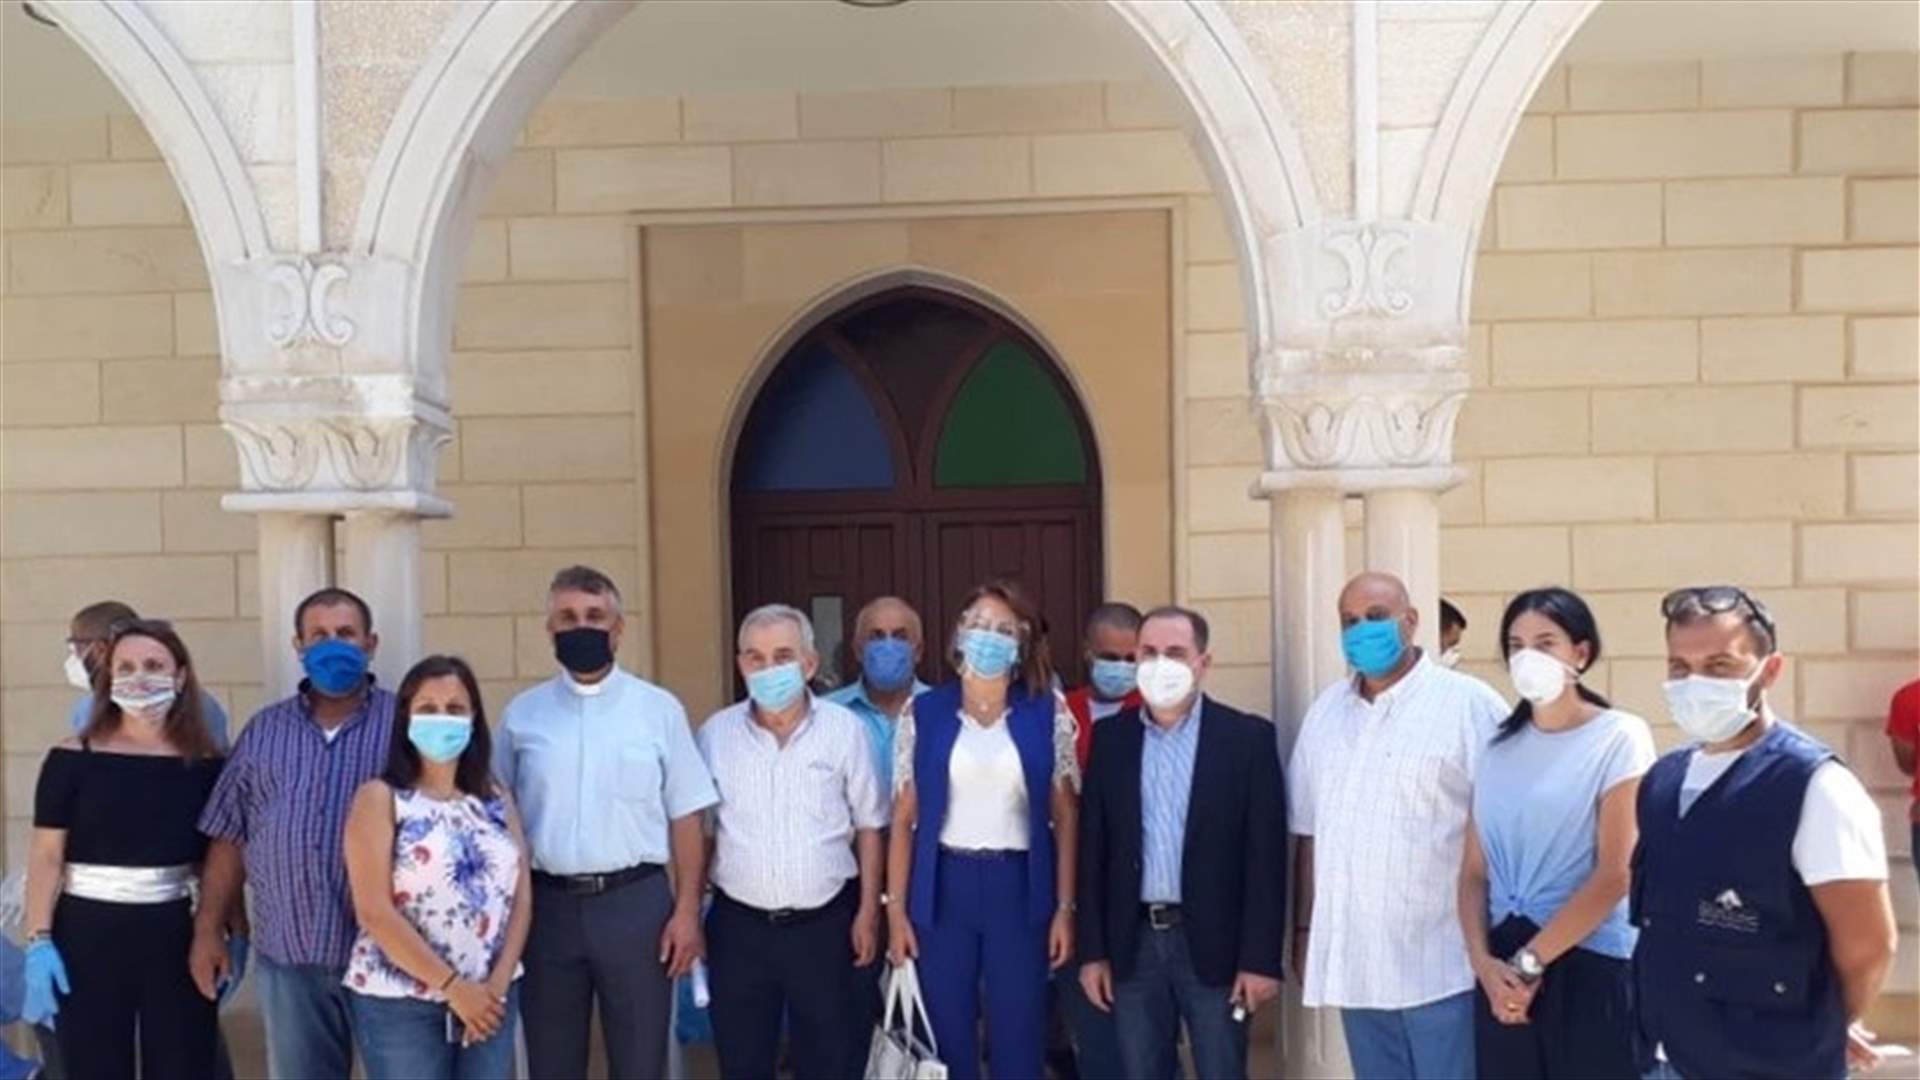 بعد اصابة احد الكهنة... فريق طبي من وزارة الصحة أجرى PCR لـ230 مواطنا من جدايل والبلدات المجاورة